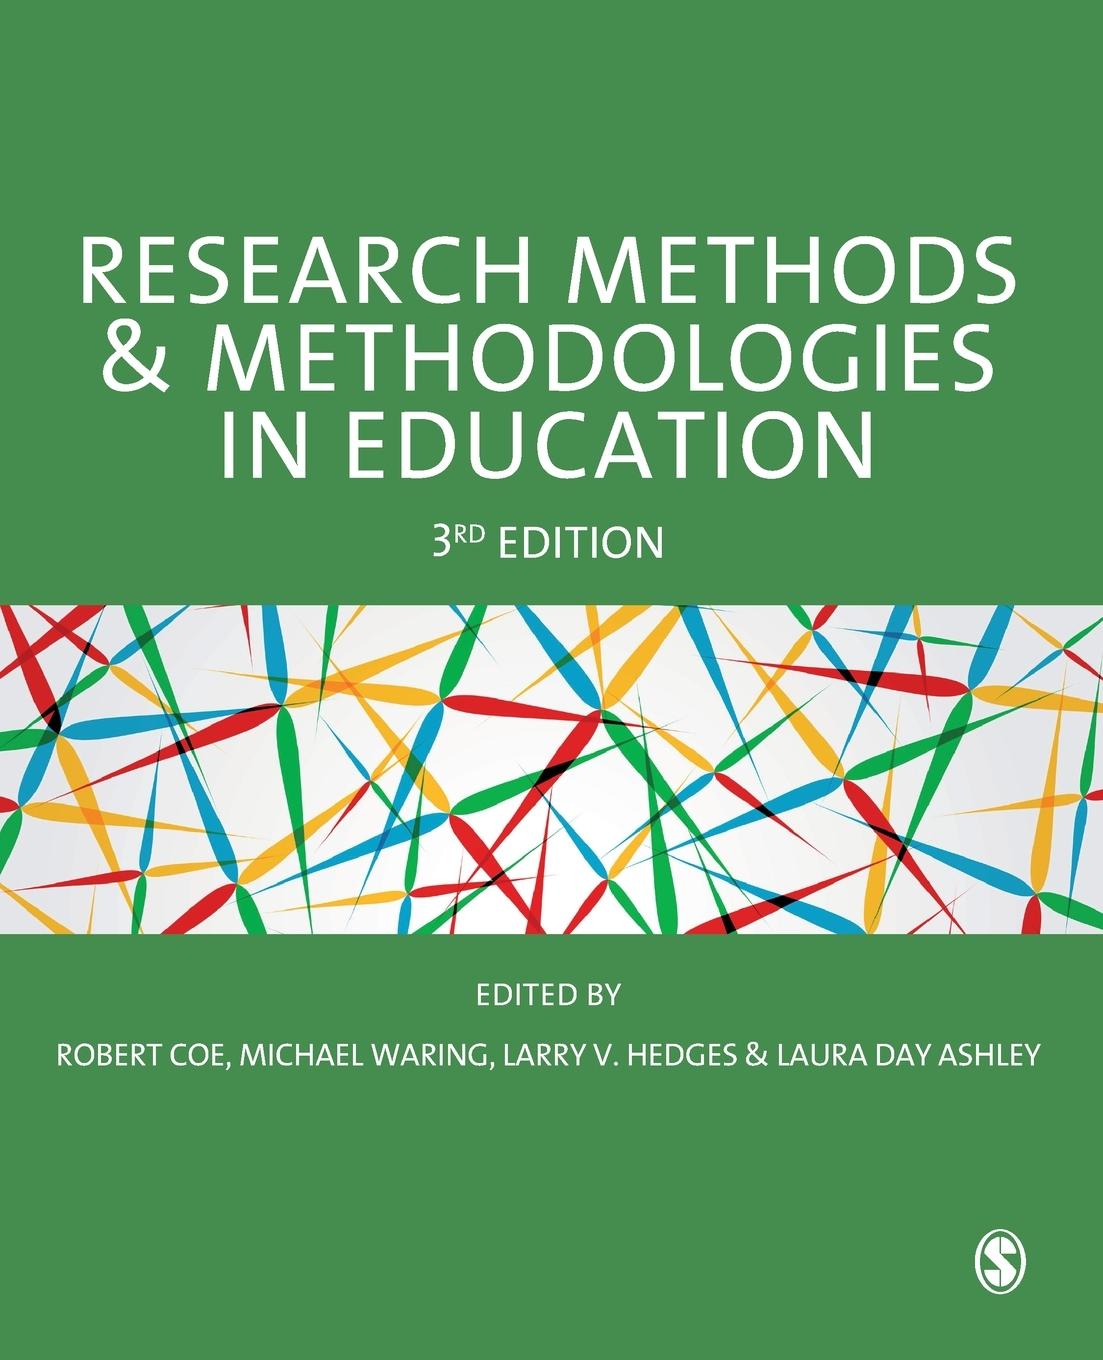 Carte Research Methods and Methodologies in Education Robert Coe